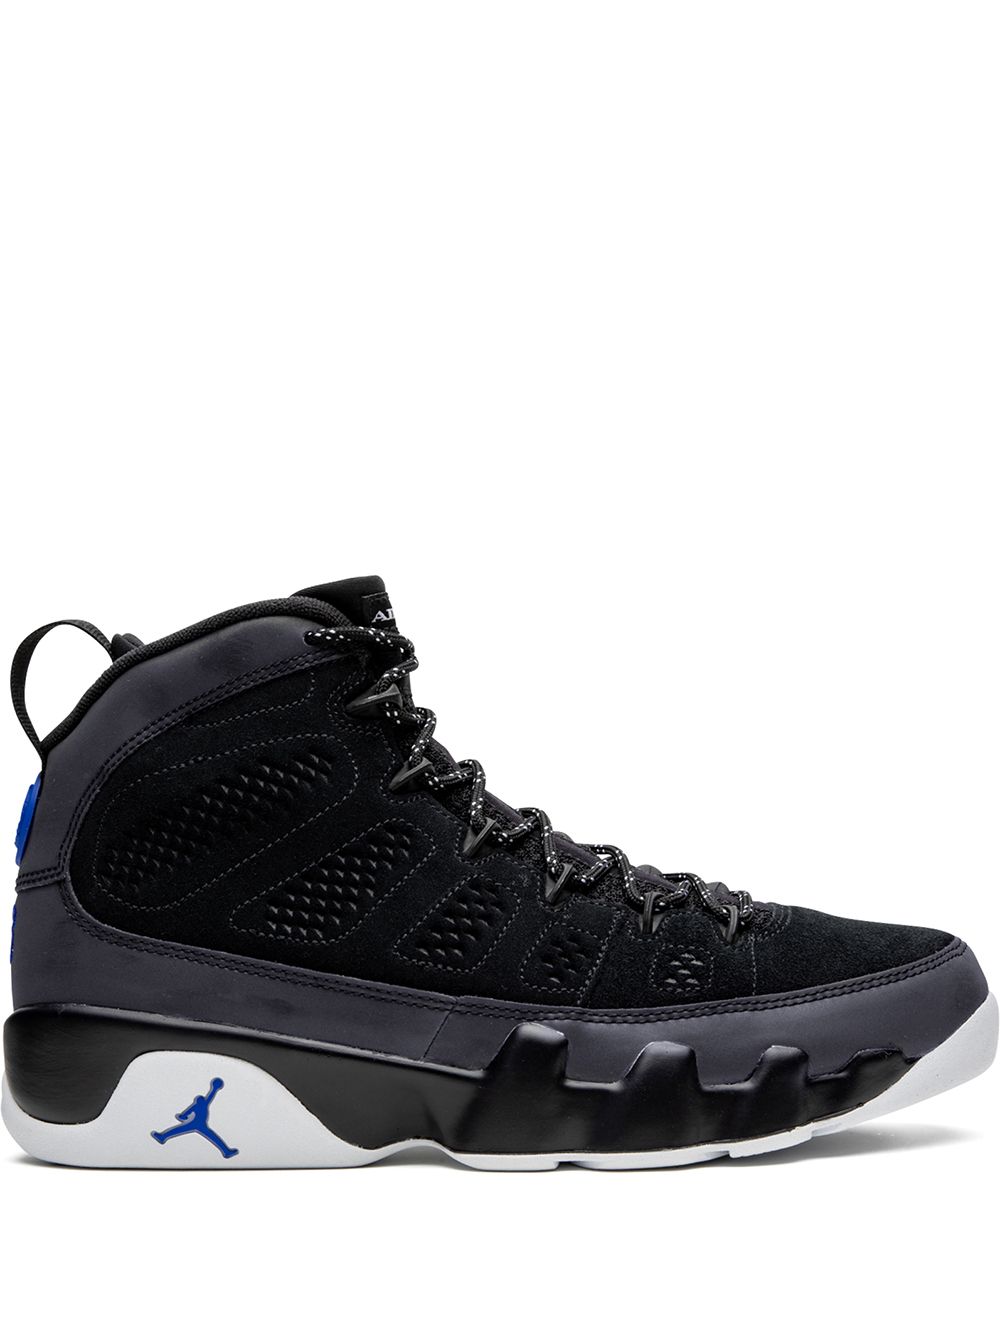 Jordan Air Jordan 9 "Racer Blue" sneakers - Black